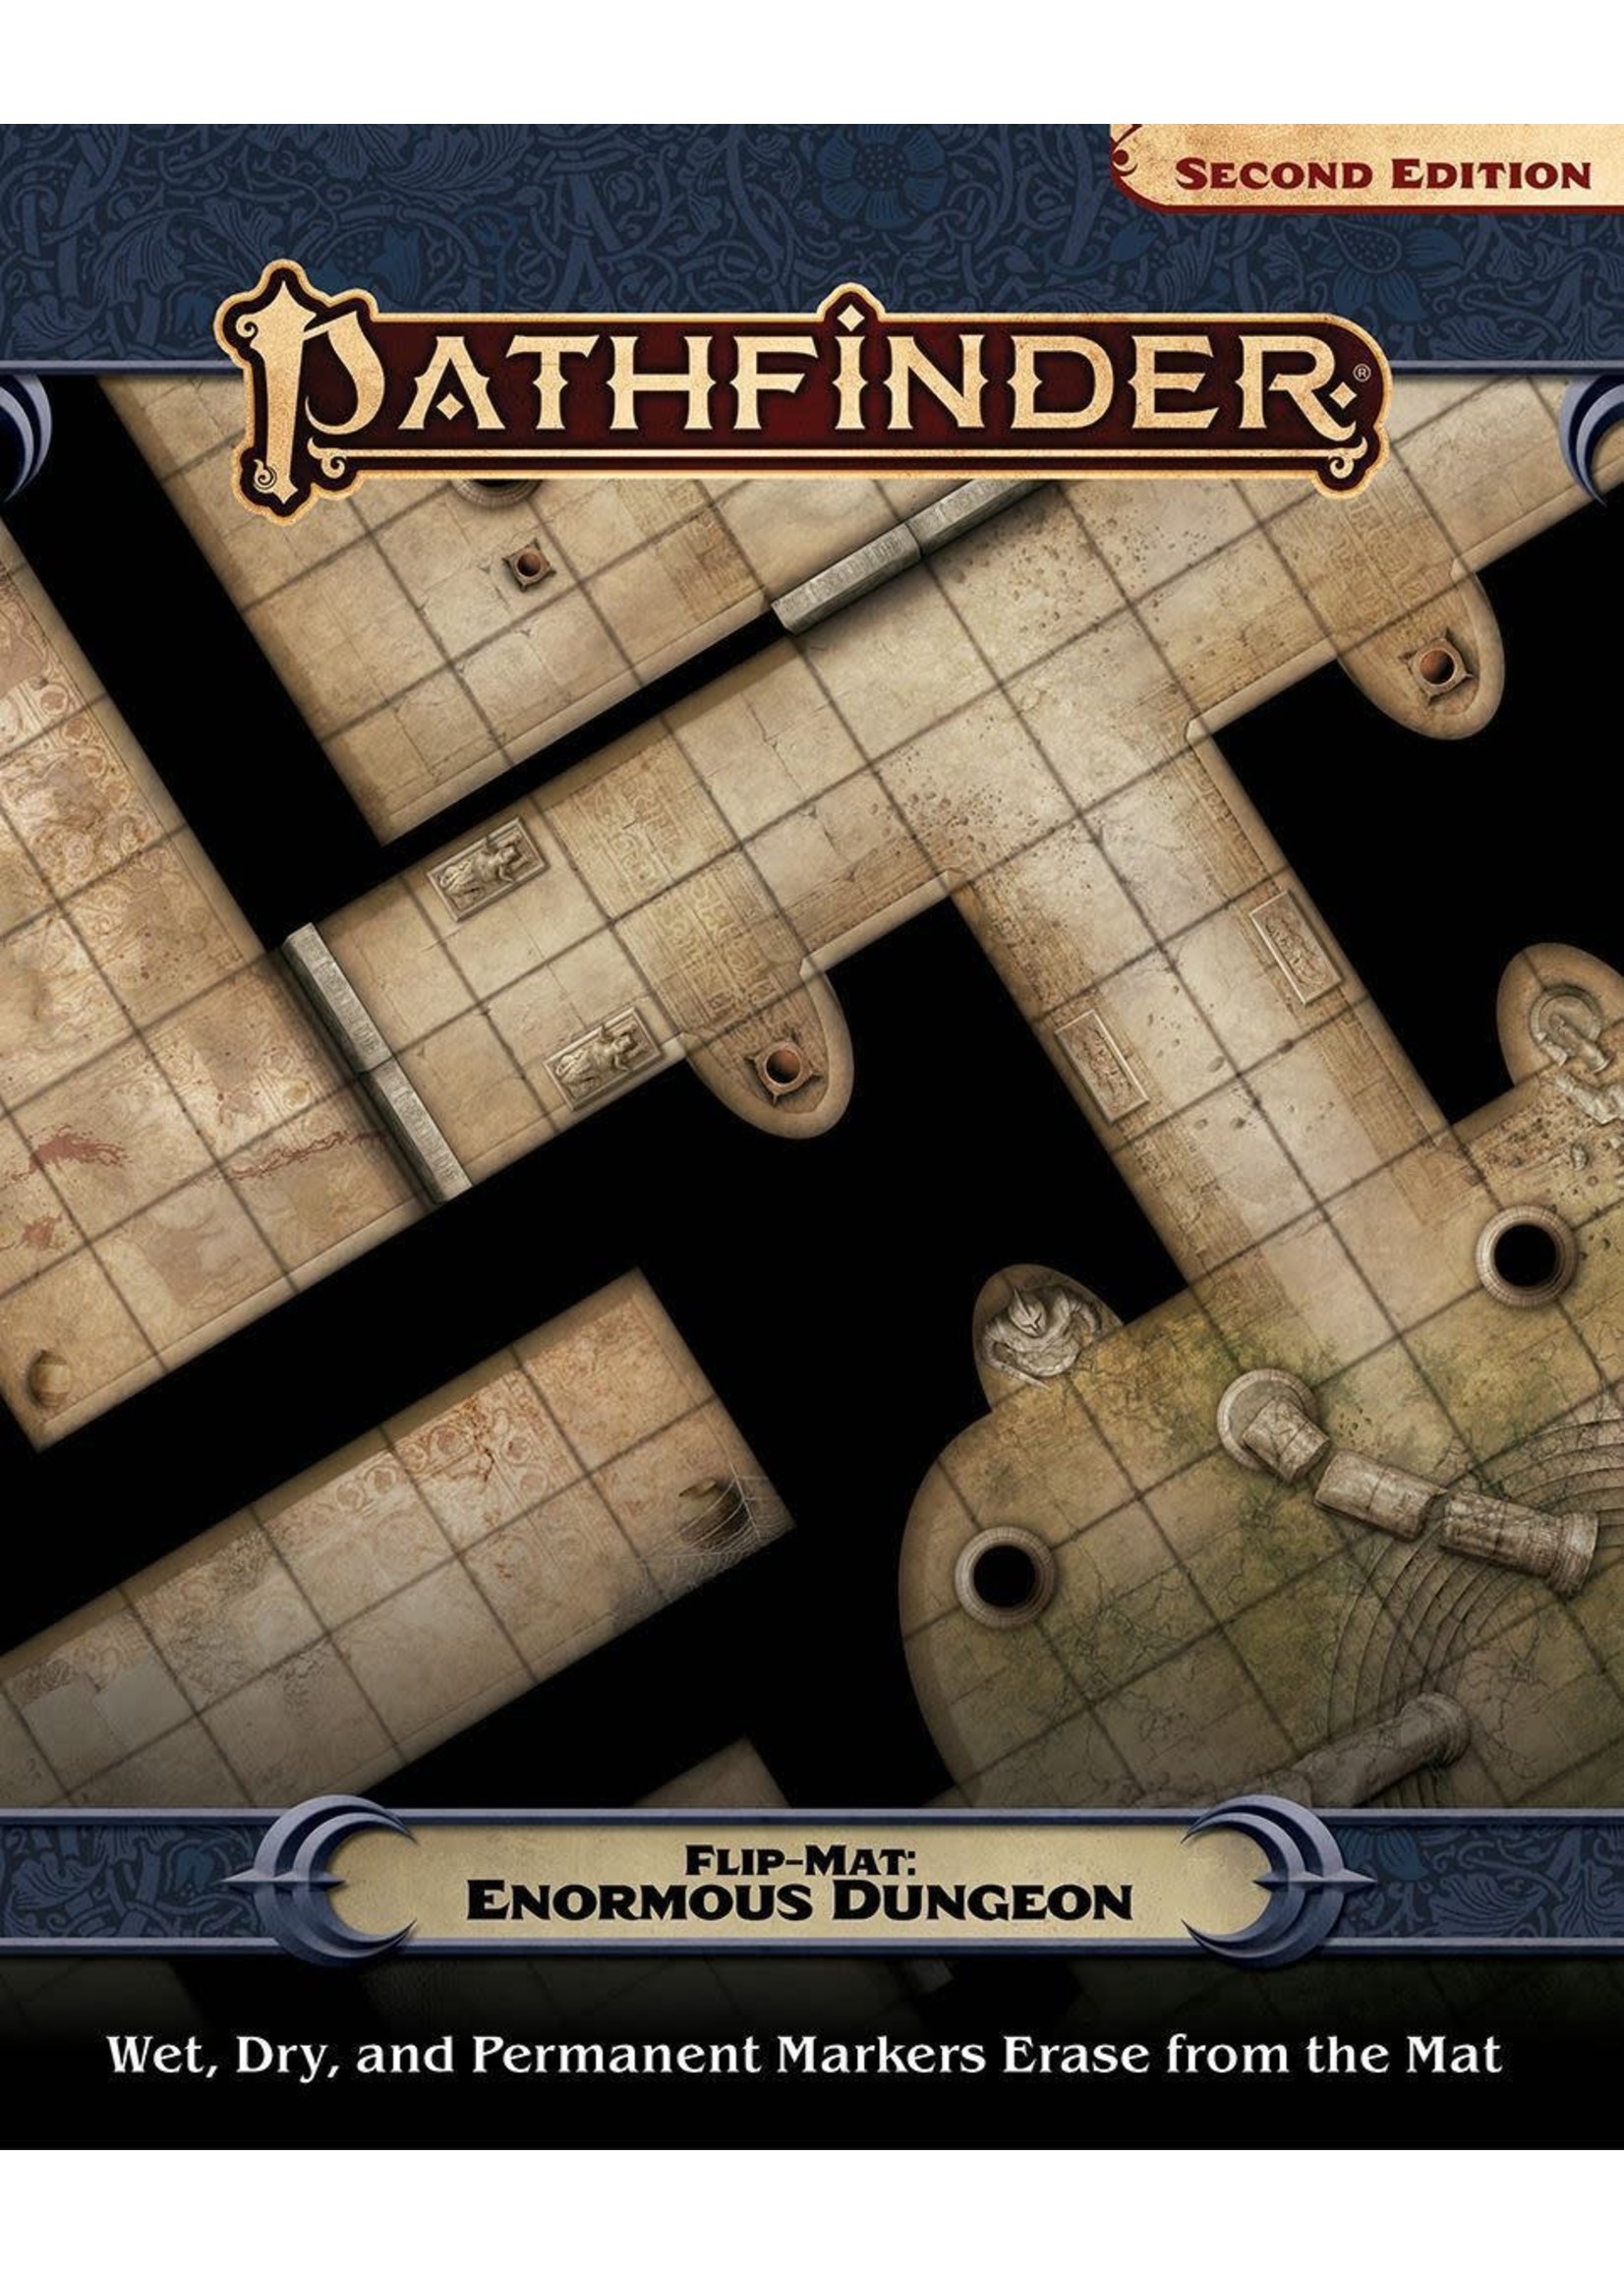 PAIZO Pathfinder RPG: Flip-Mat - Enormous Dungeon